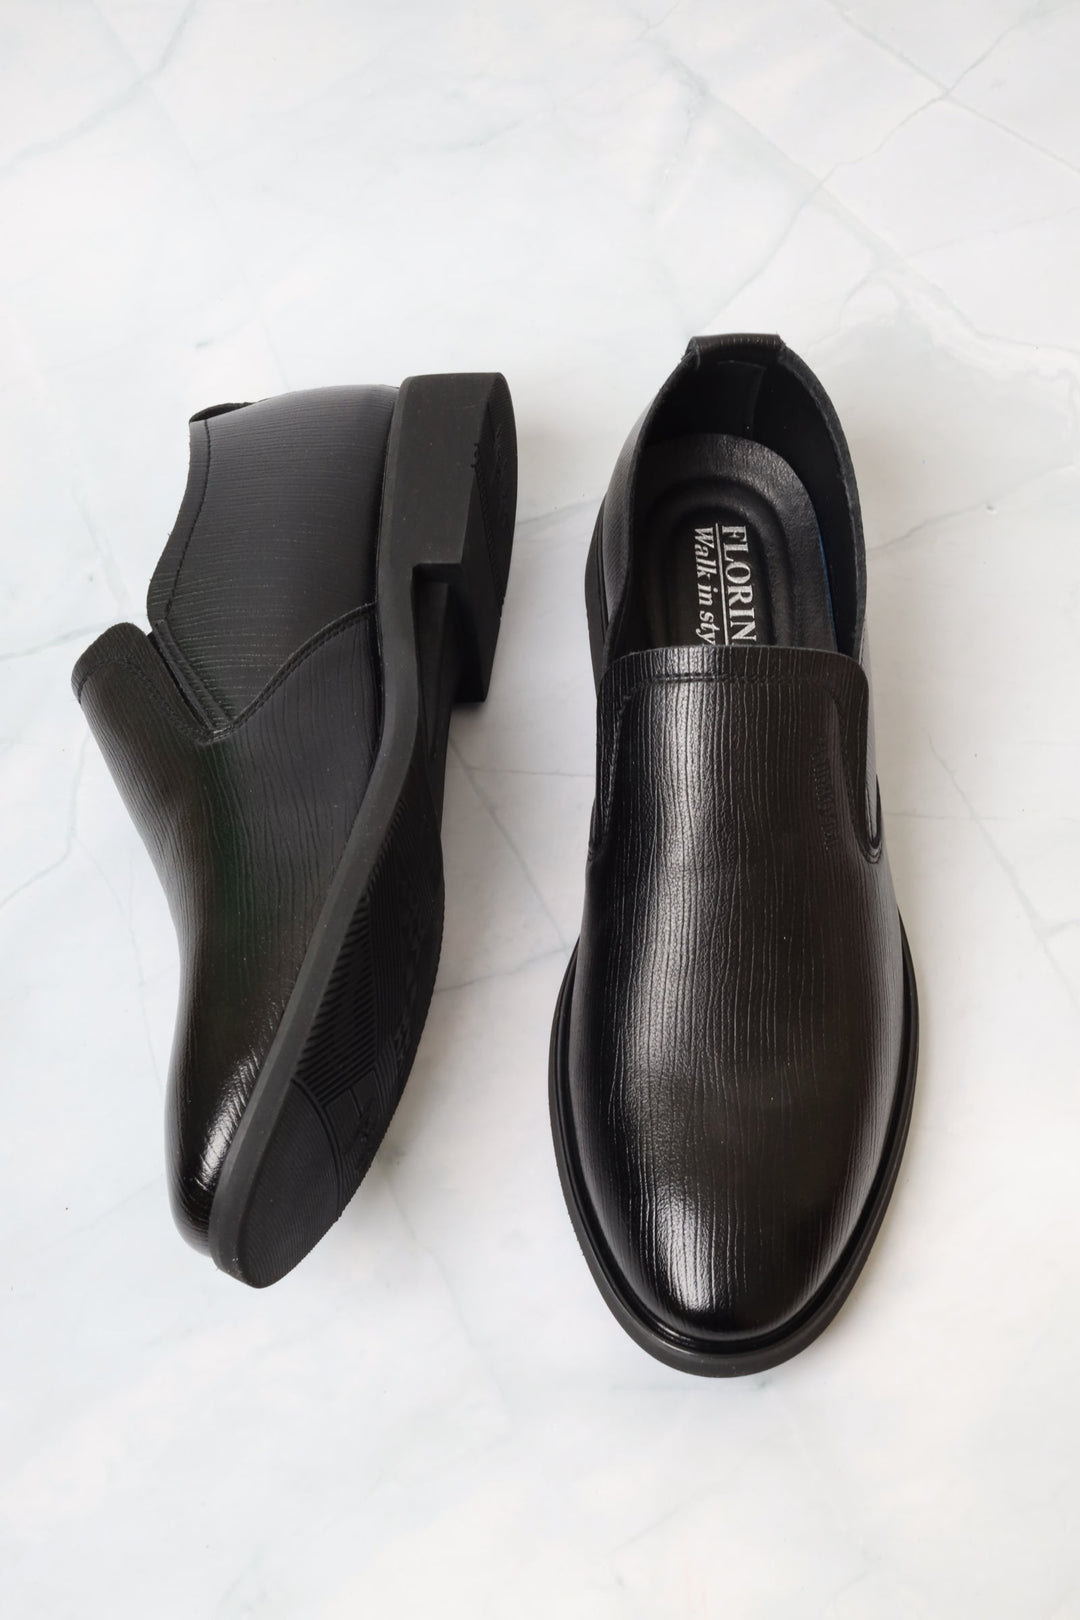 حذاء رسمي أسود 83611 - فلورينا